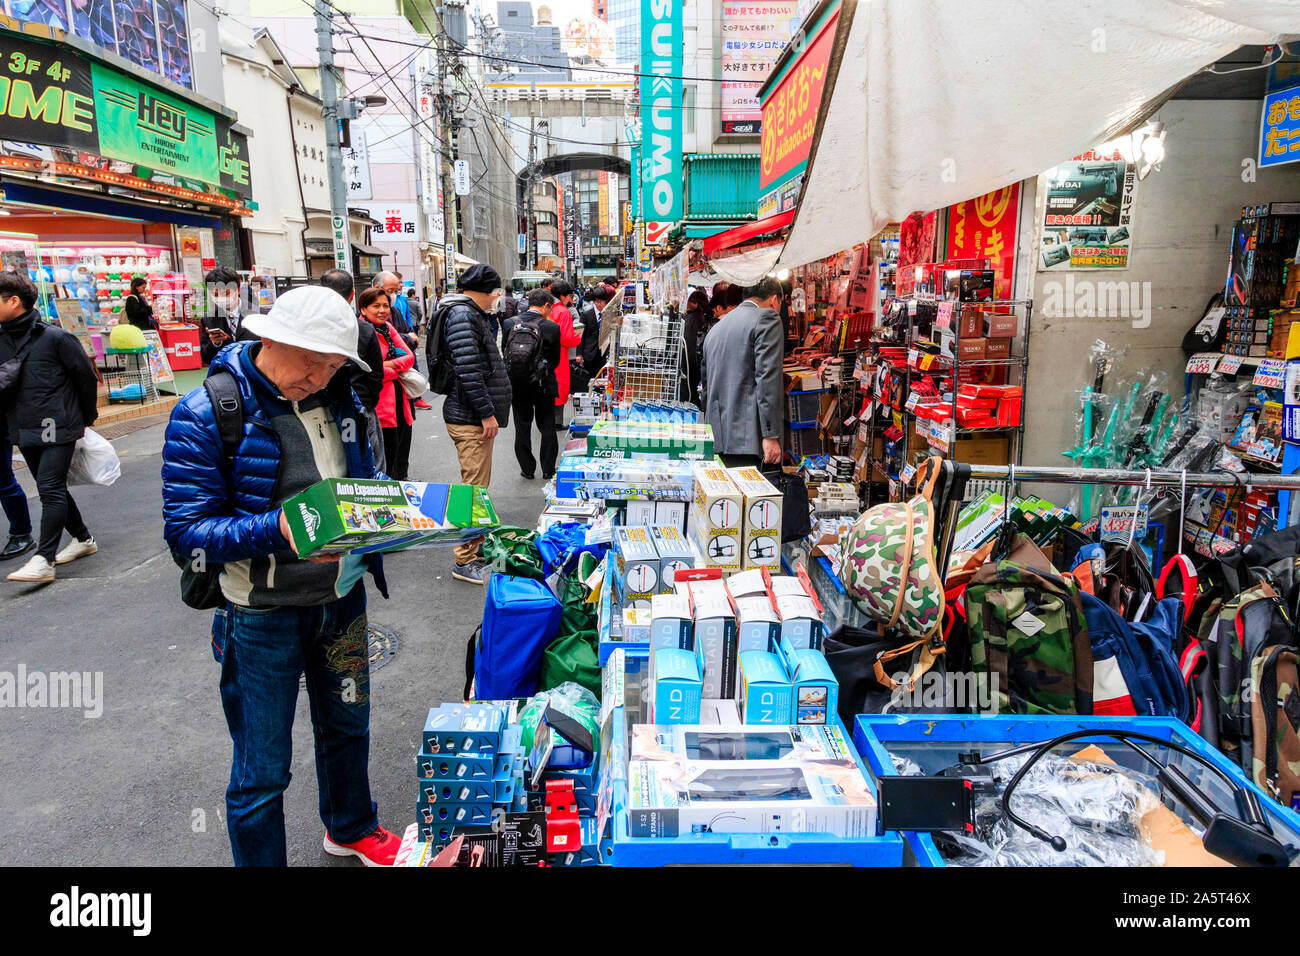 Tokio, Akihabara. Schmale Einkaufsstraße, Sotokanda, mit Store und Geschäfte, viele mit außerhalb Pflaster Anzeige von Handelswaren. Der Mensch auf der Suche nach Produkt. Stockfoto